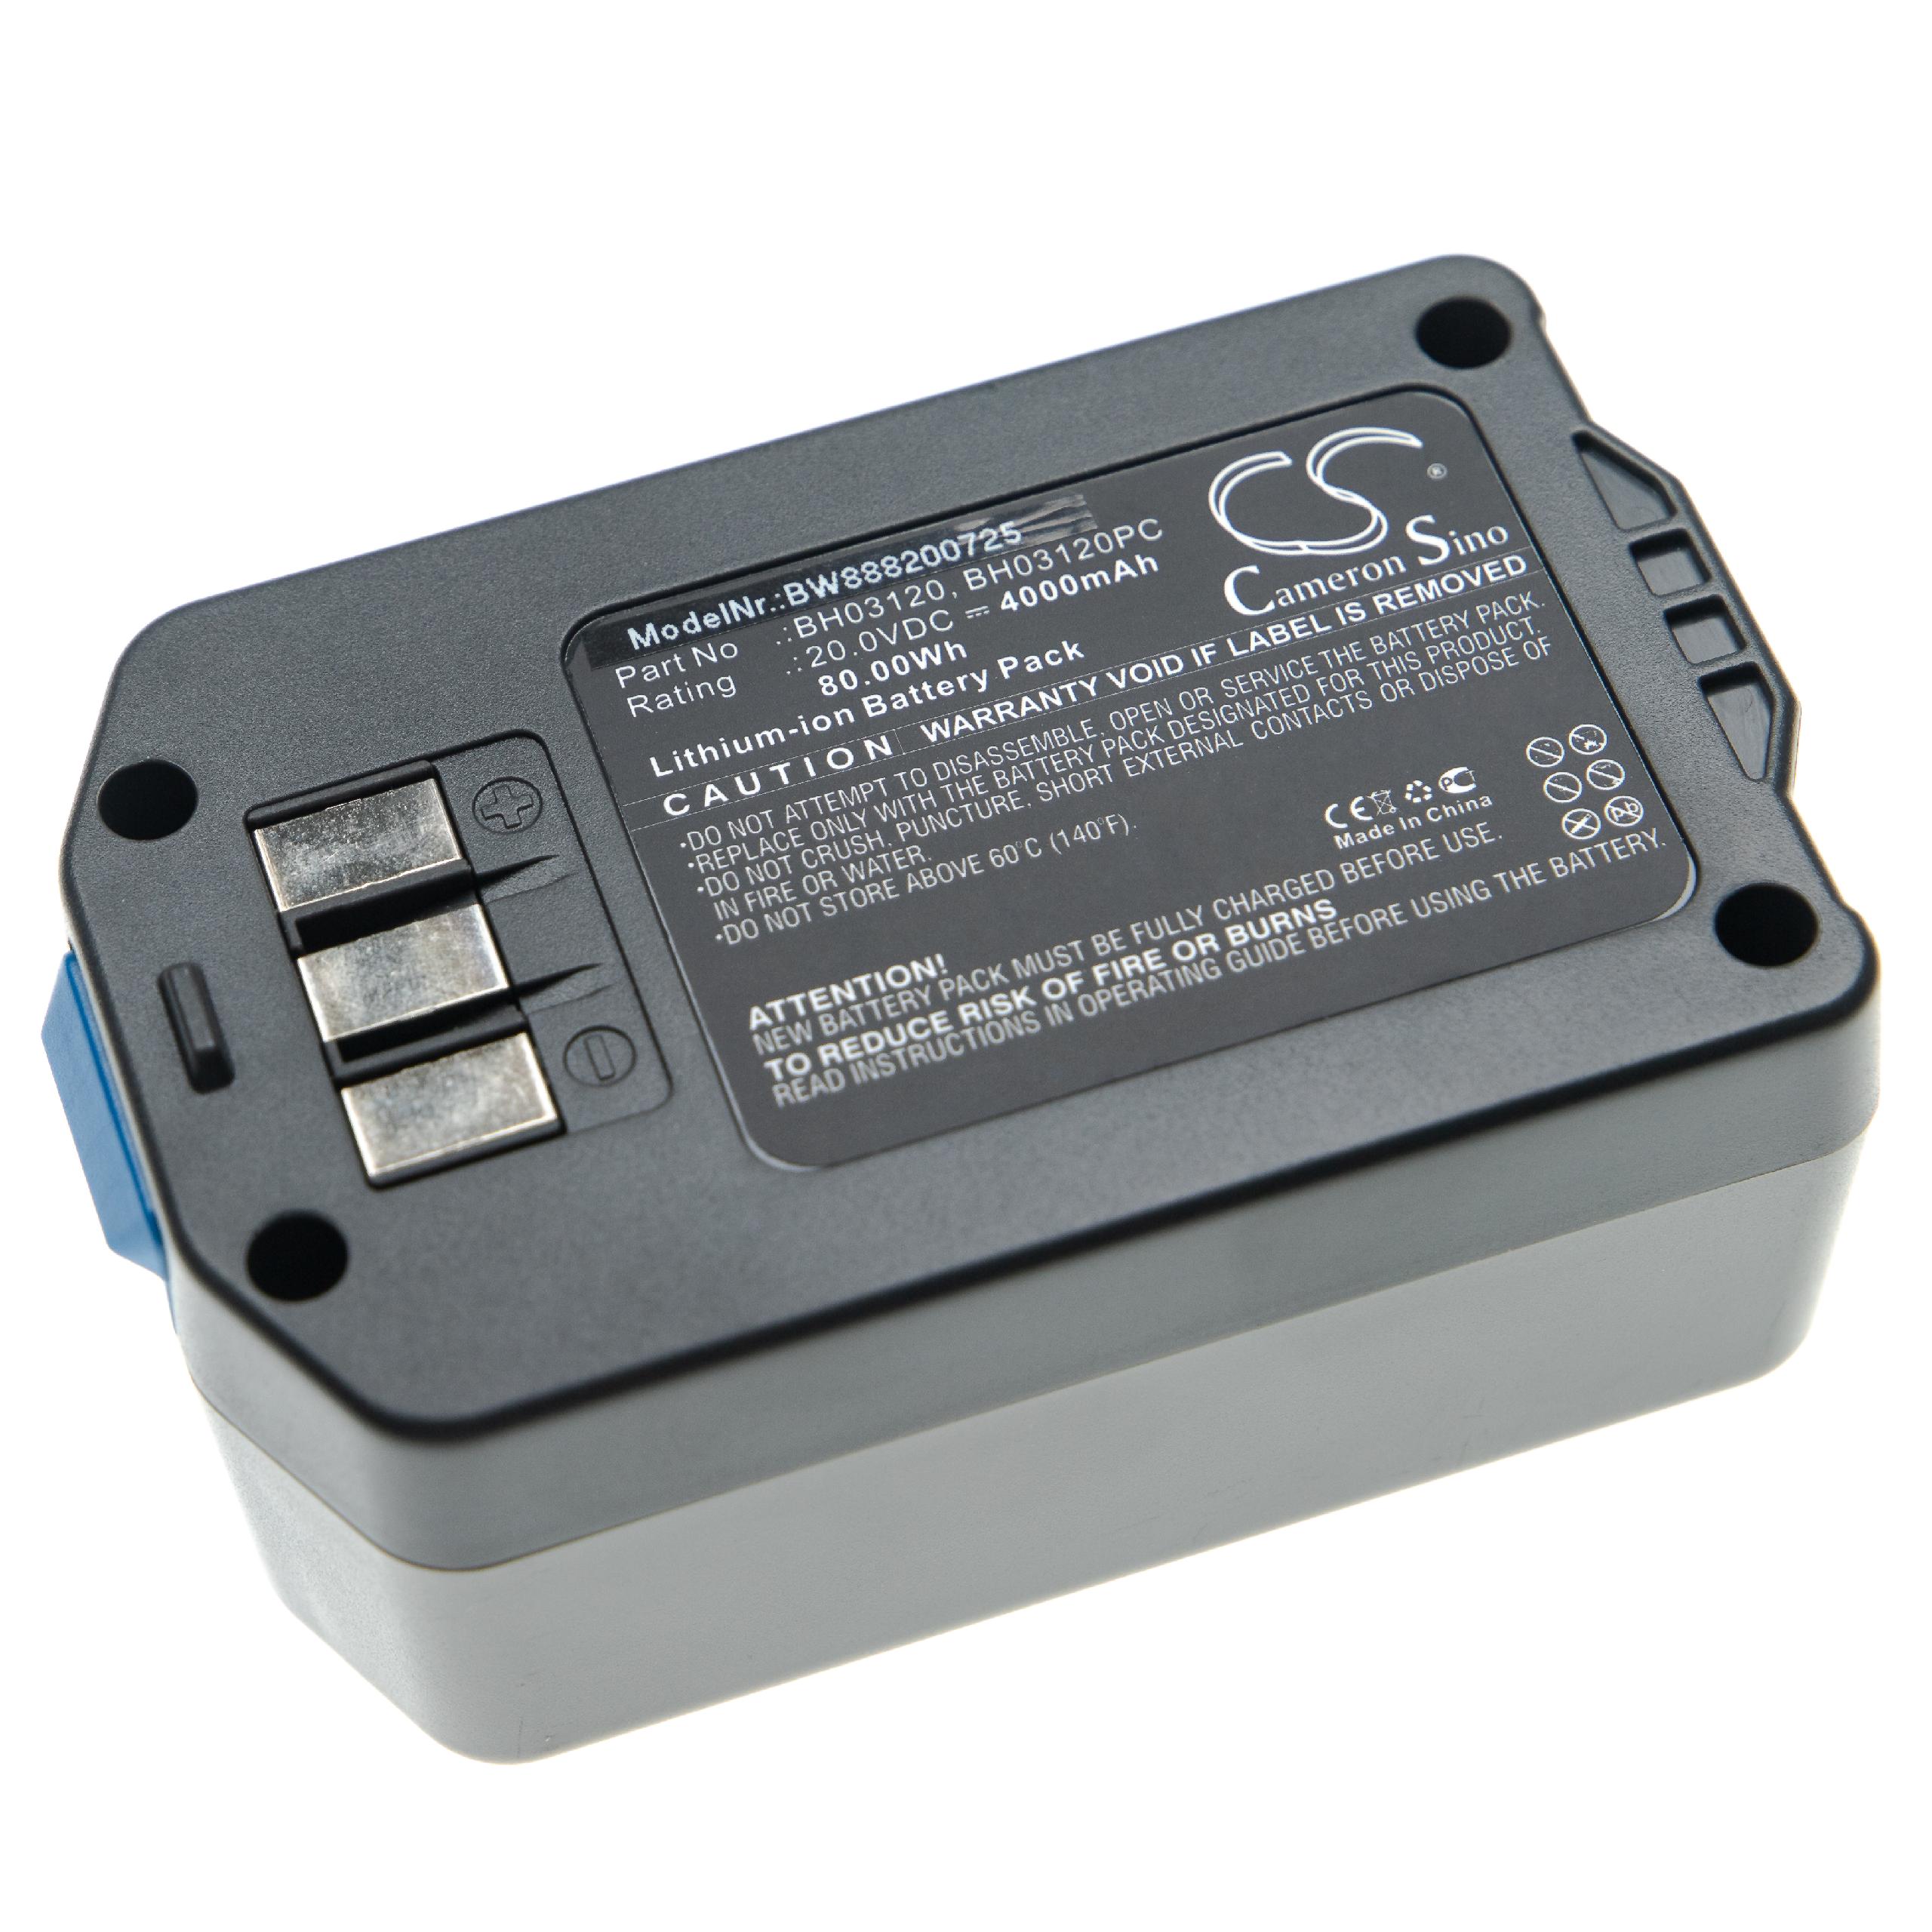 Akumulator do odkurzacza zamiennik Hoover 440005973, 440005966 - 4000 mAh 20 V Li-Ion, szary / niebieski